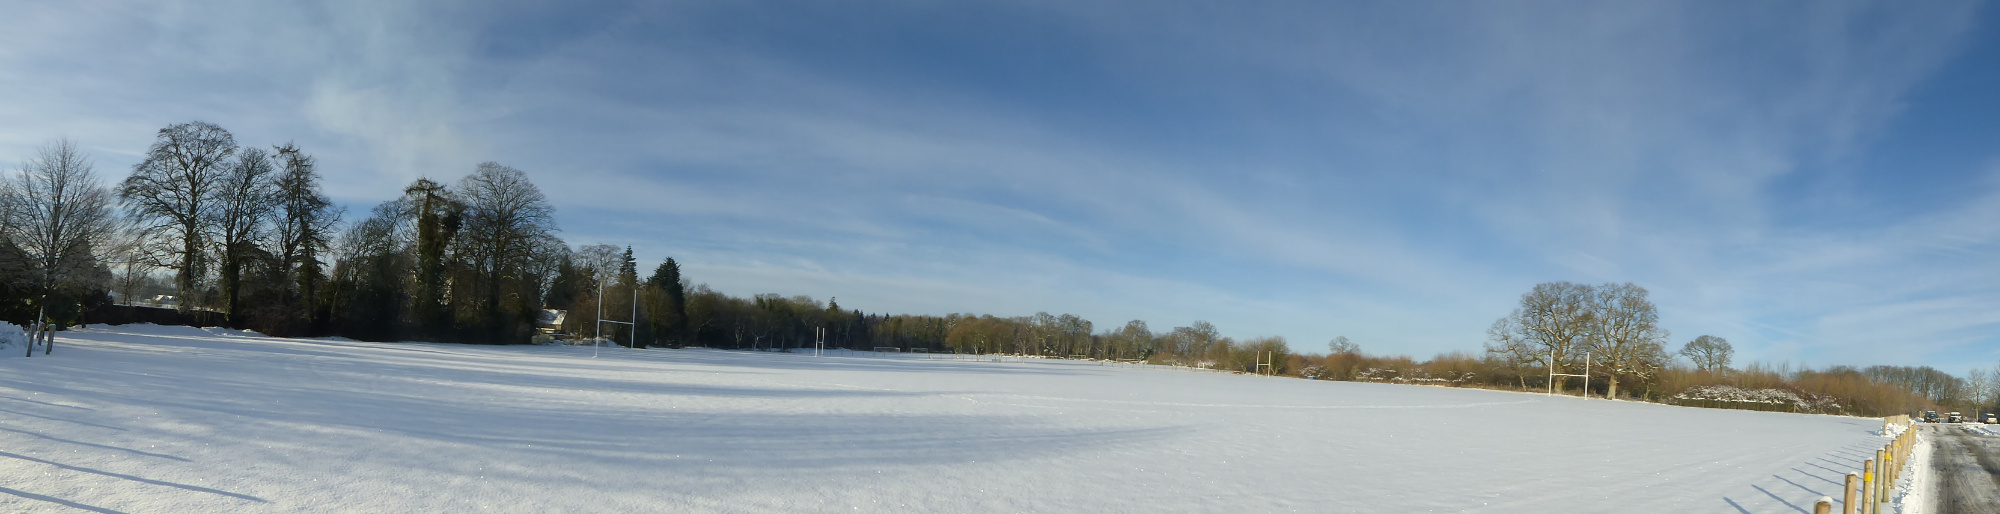 snow december 2017 field